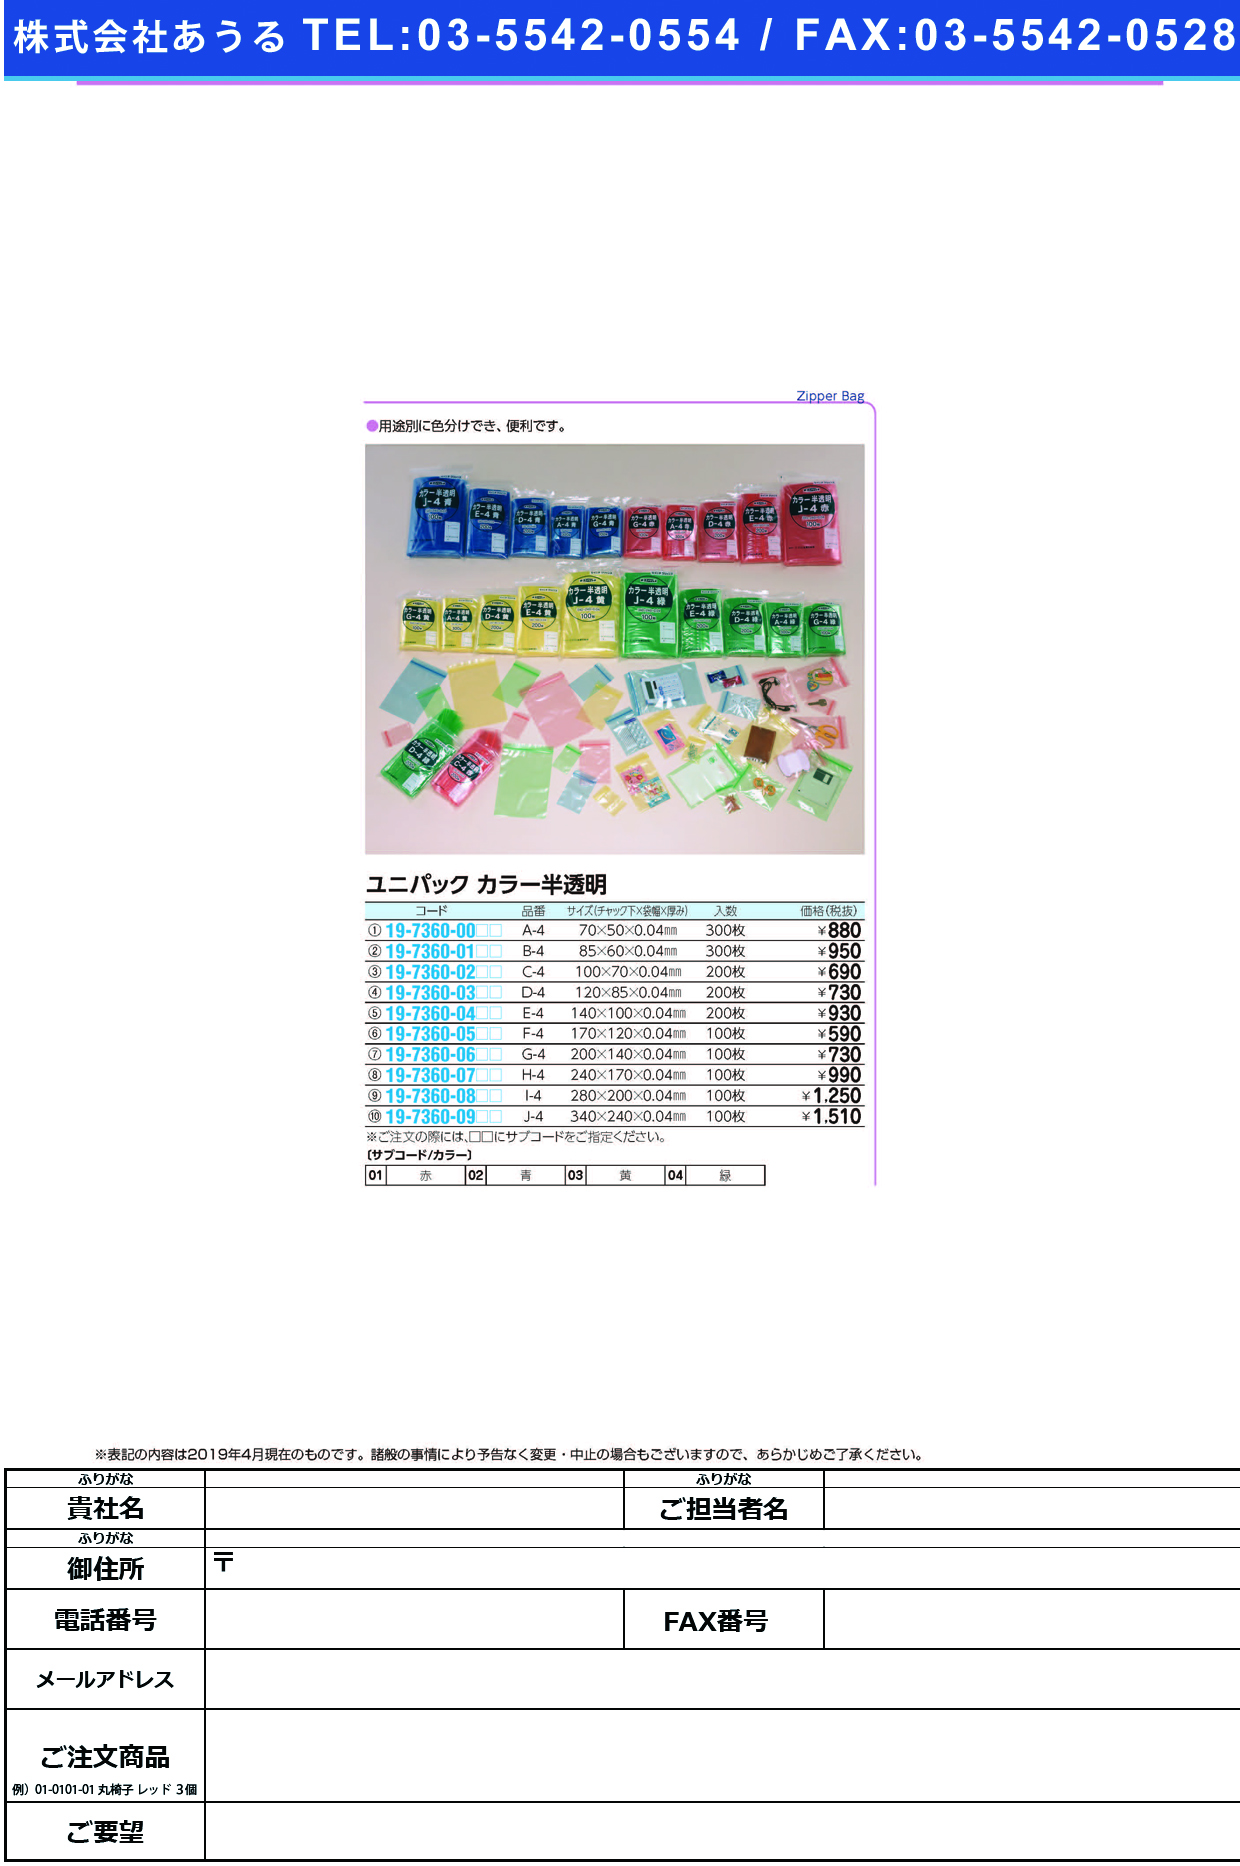 (19-7360-01)ユニパックカラー半透明 B-4(300ﾏｲｲﾘ) ﾕﾆﾊﾟｯｸｶﾗｰﾊﾝﾄｳﾒｲ 黄【1袋単位】【2019年カタログ商品】